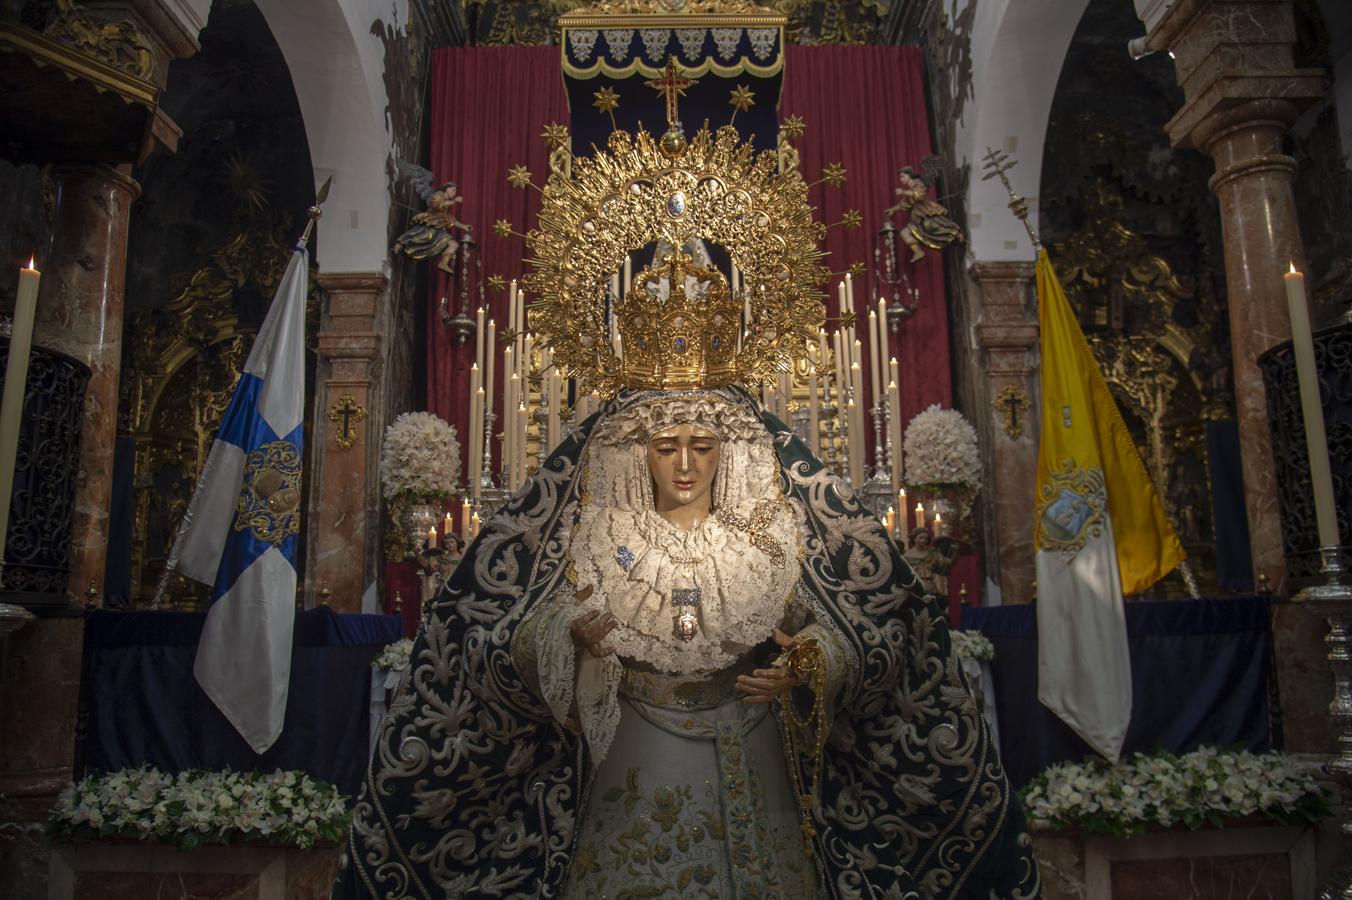 La Virgen de la Candelaria